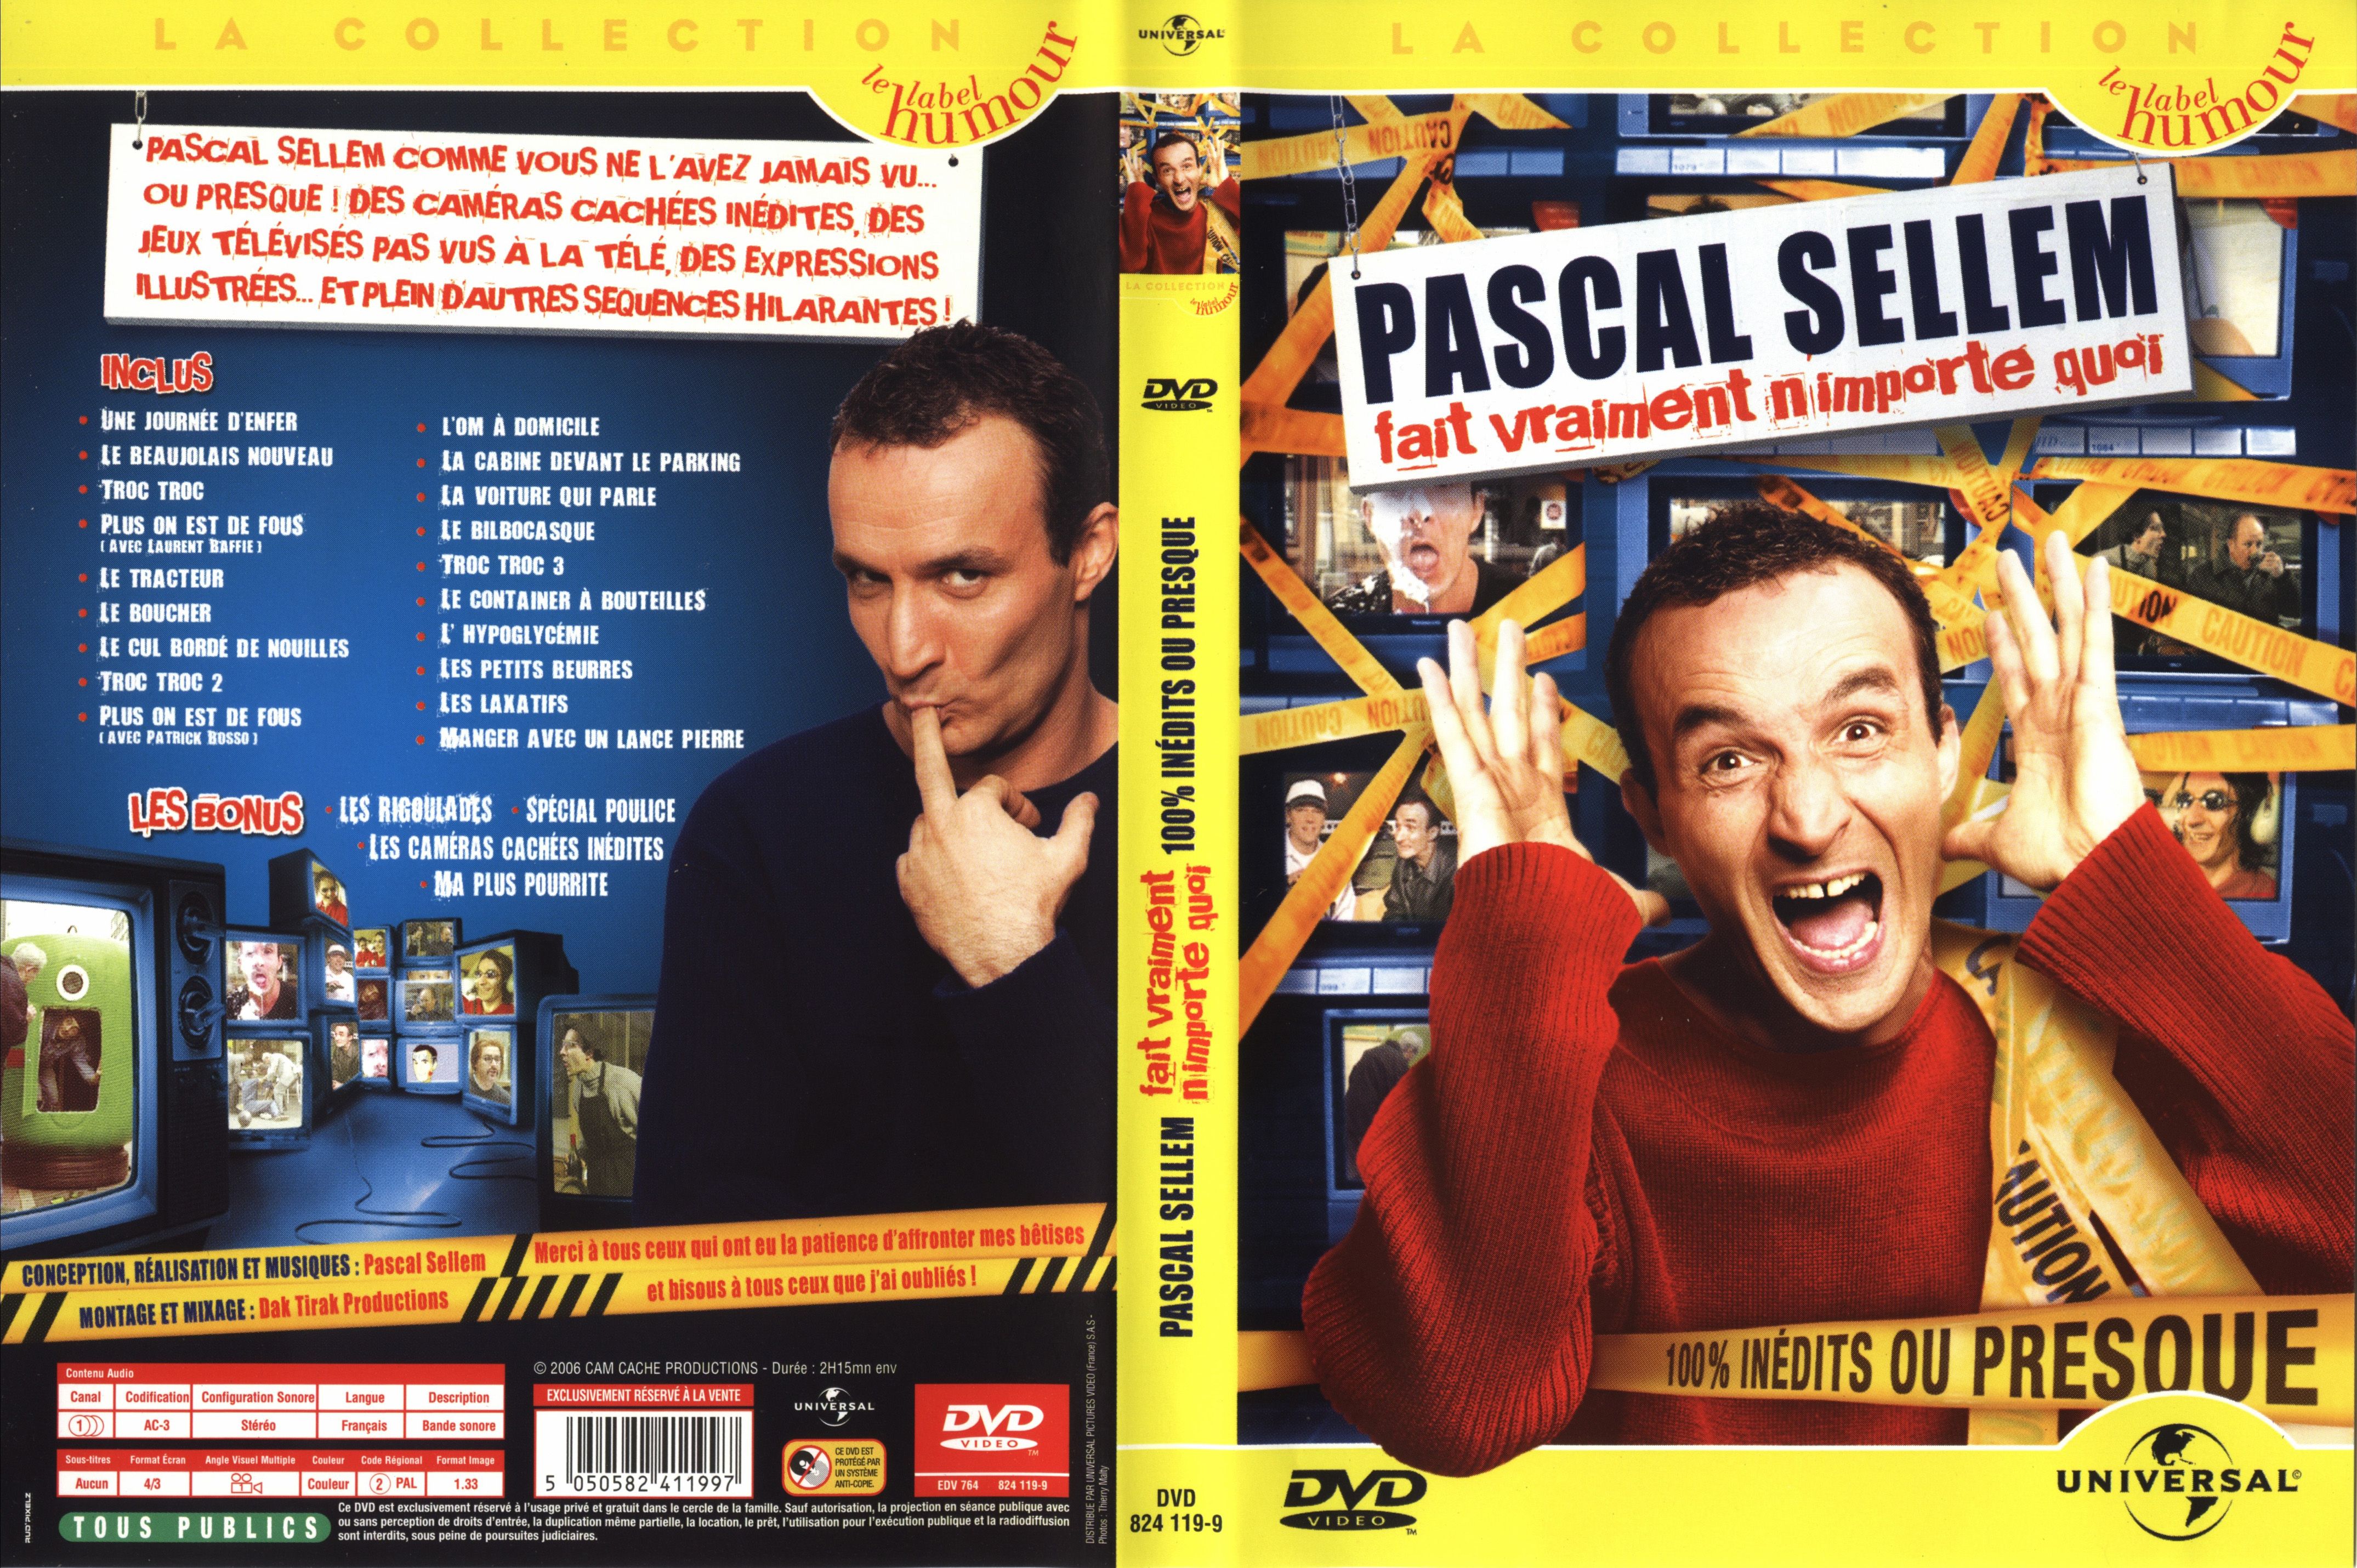 Jaquette DVD Pascal Sellem fait vraiment n